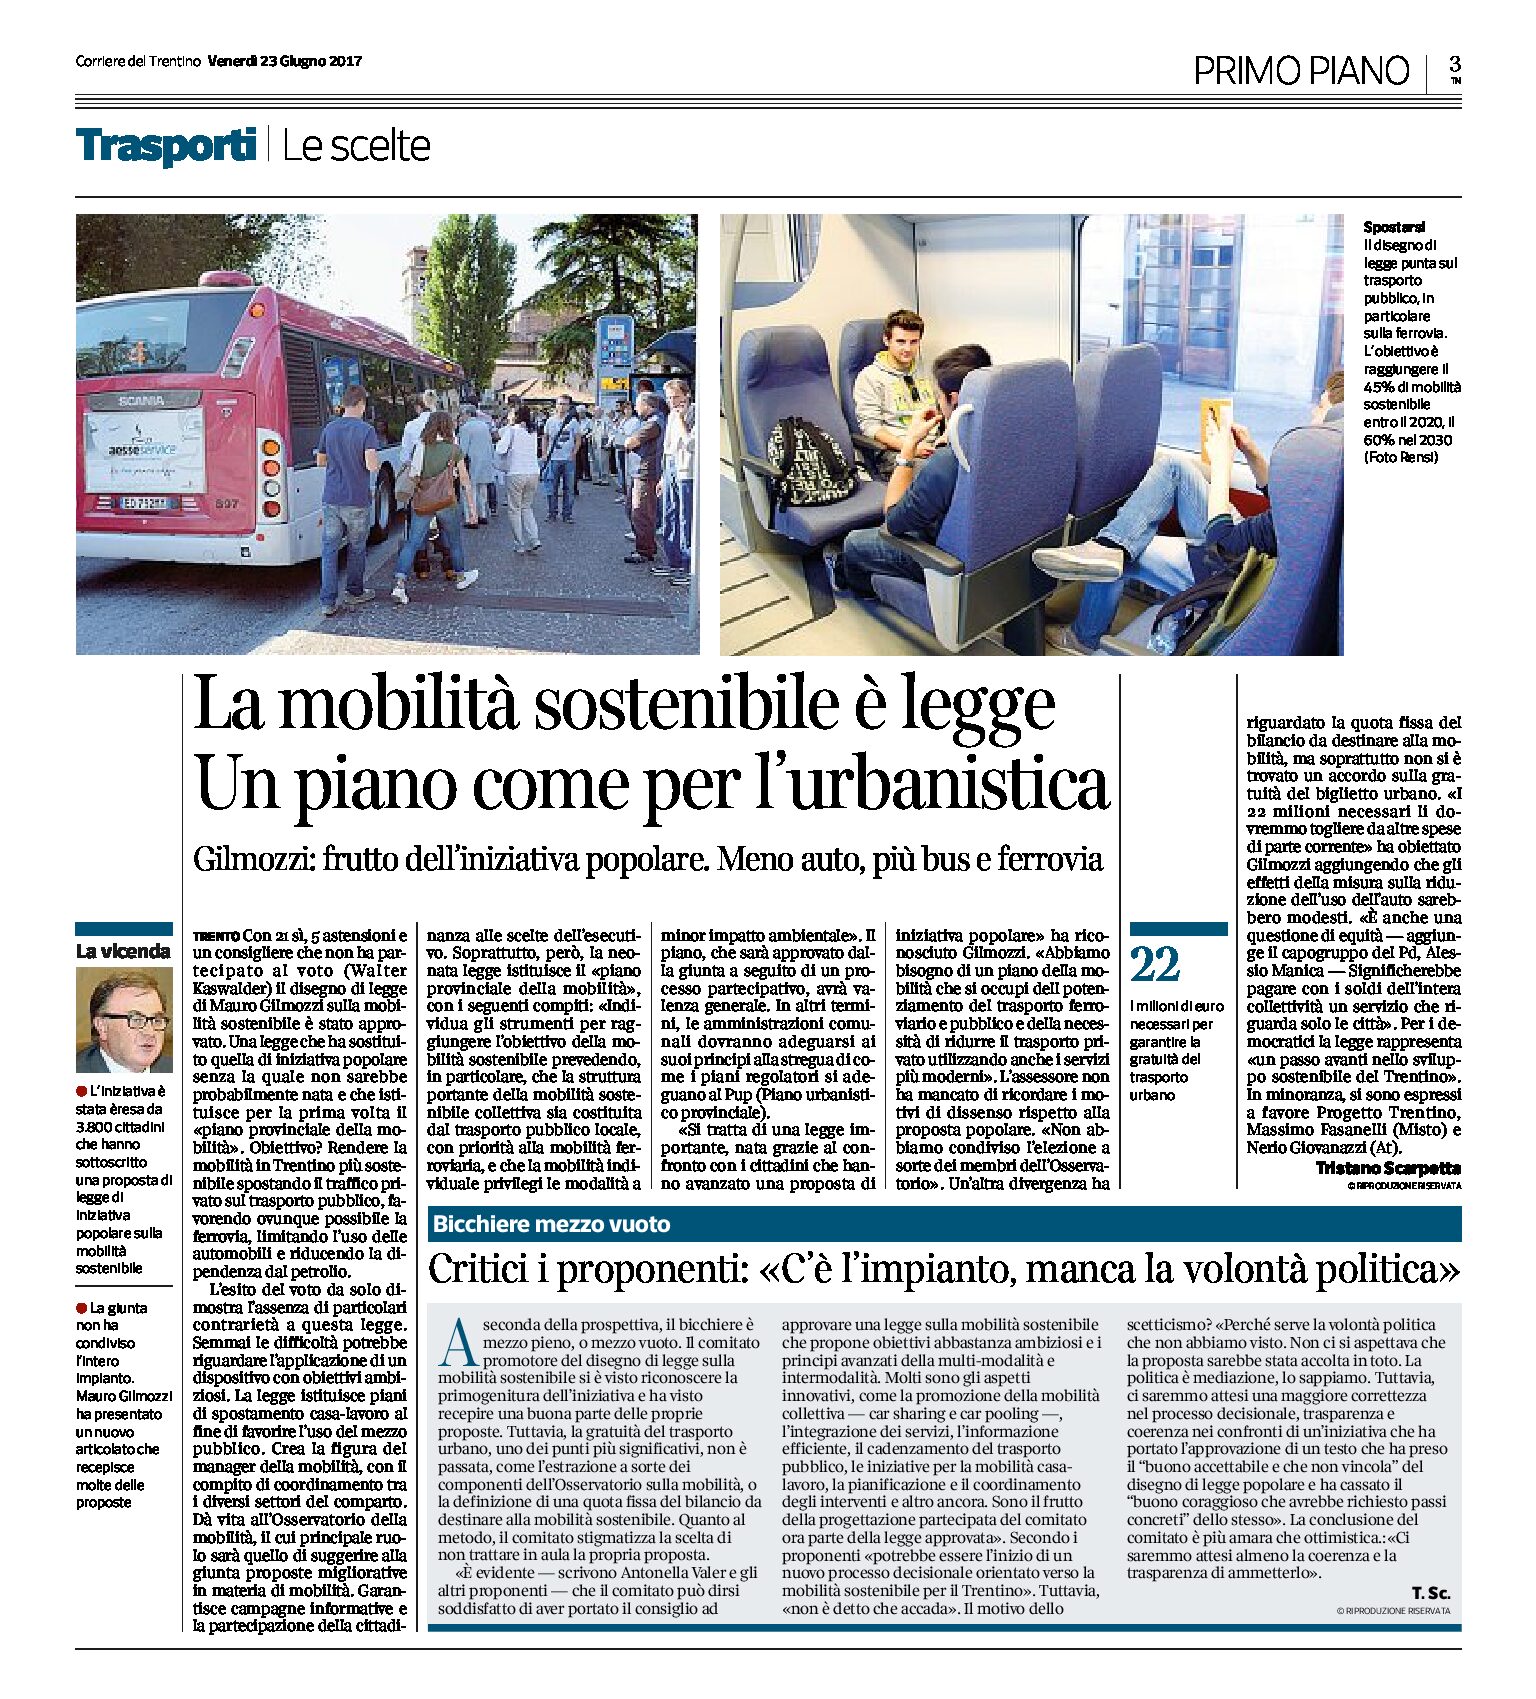 Trento, mobilità sostenibile: è legge. Un piano come per l’urbanistica